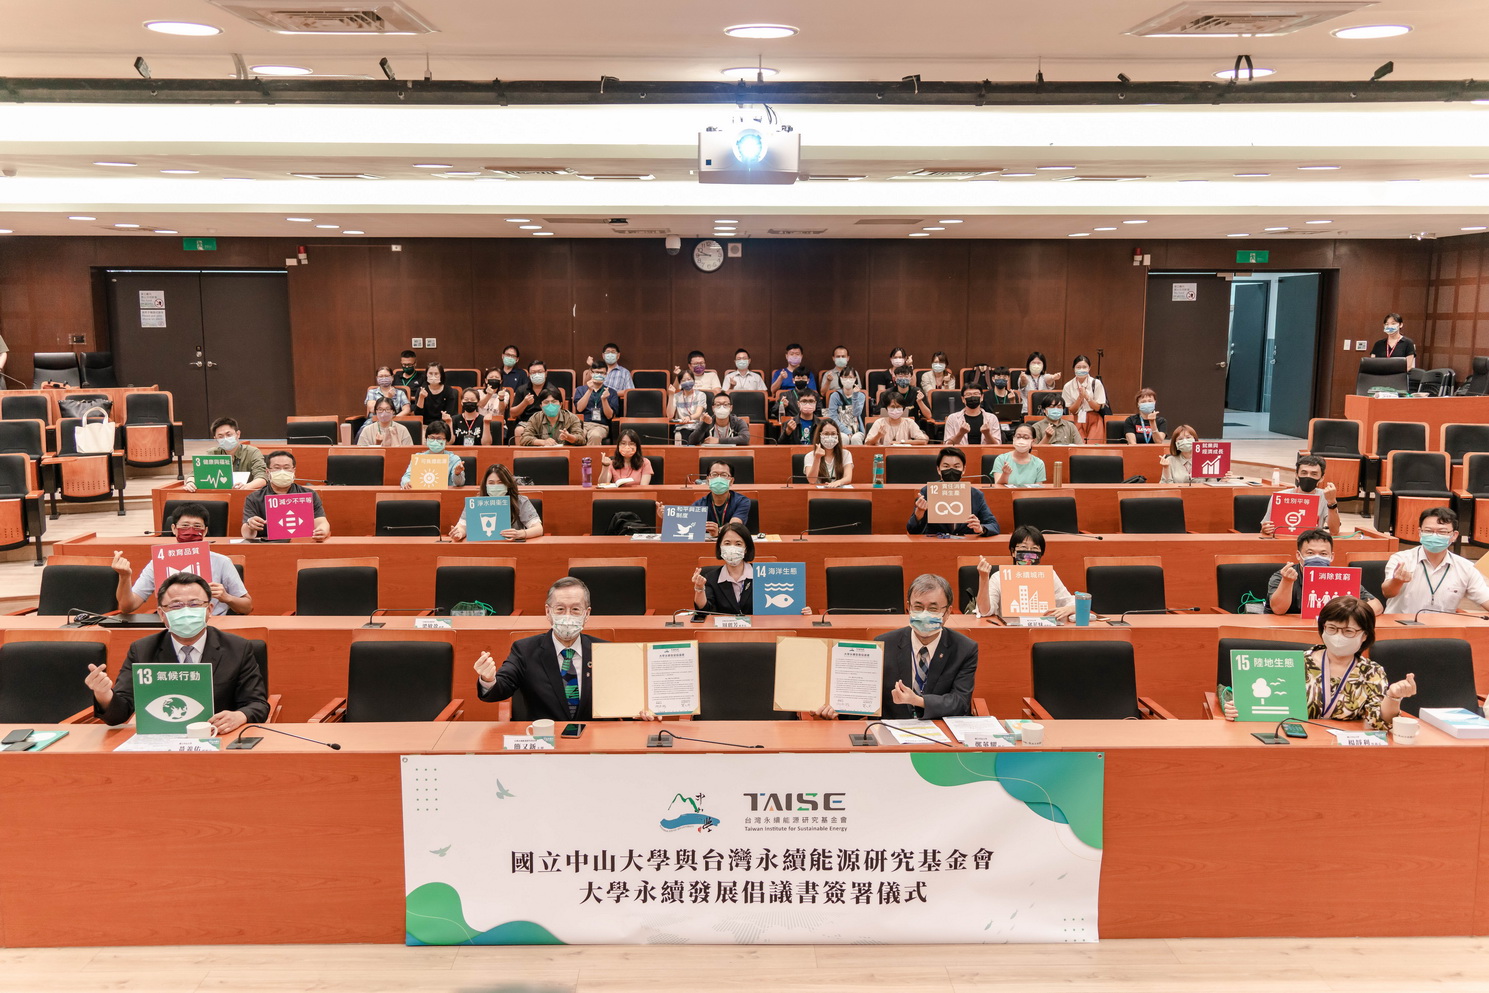 中山大學締約台灣永續基金會  打造淨零碳排校園